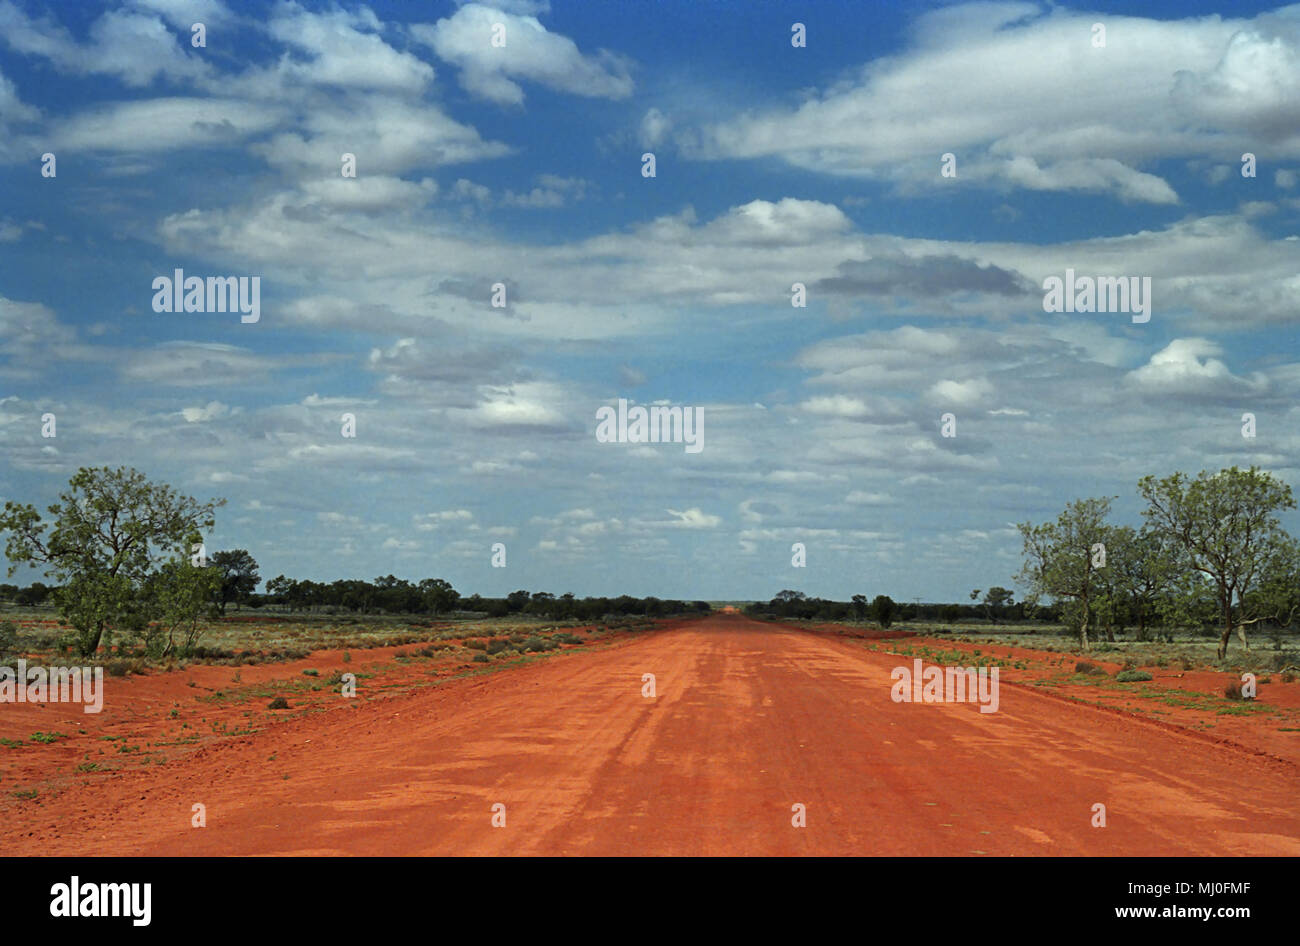 Eine leere Red dirt road, die Schnittlinie zwischen Wanaaring und Tibooburra, Outback New South Wales, Australien. Stockfoto